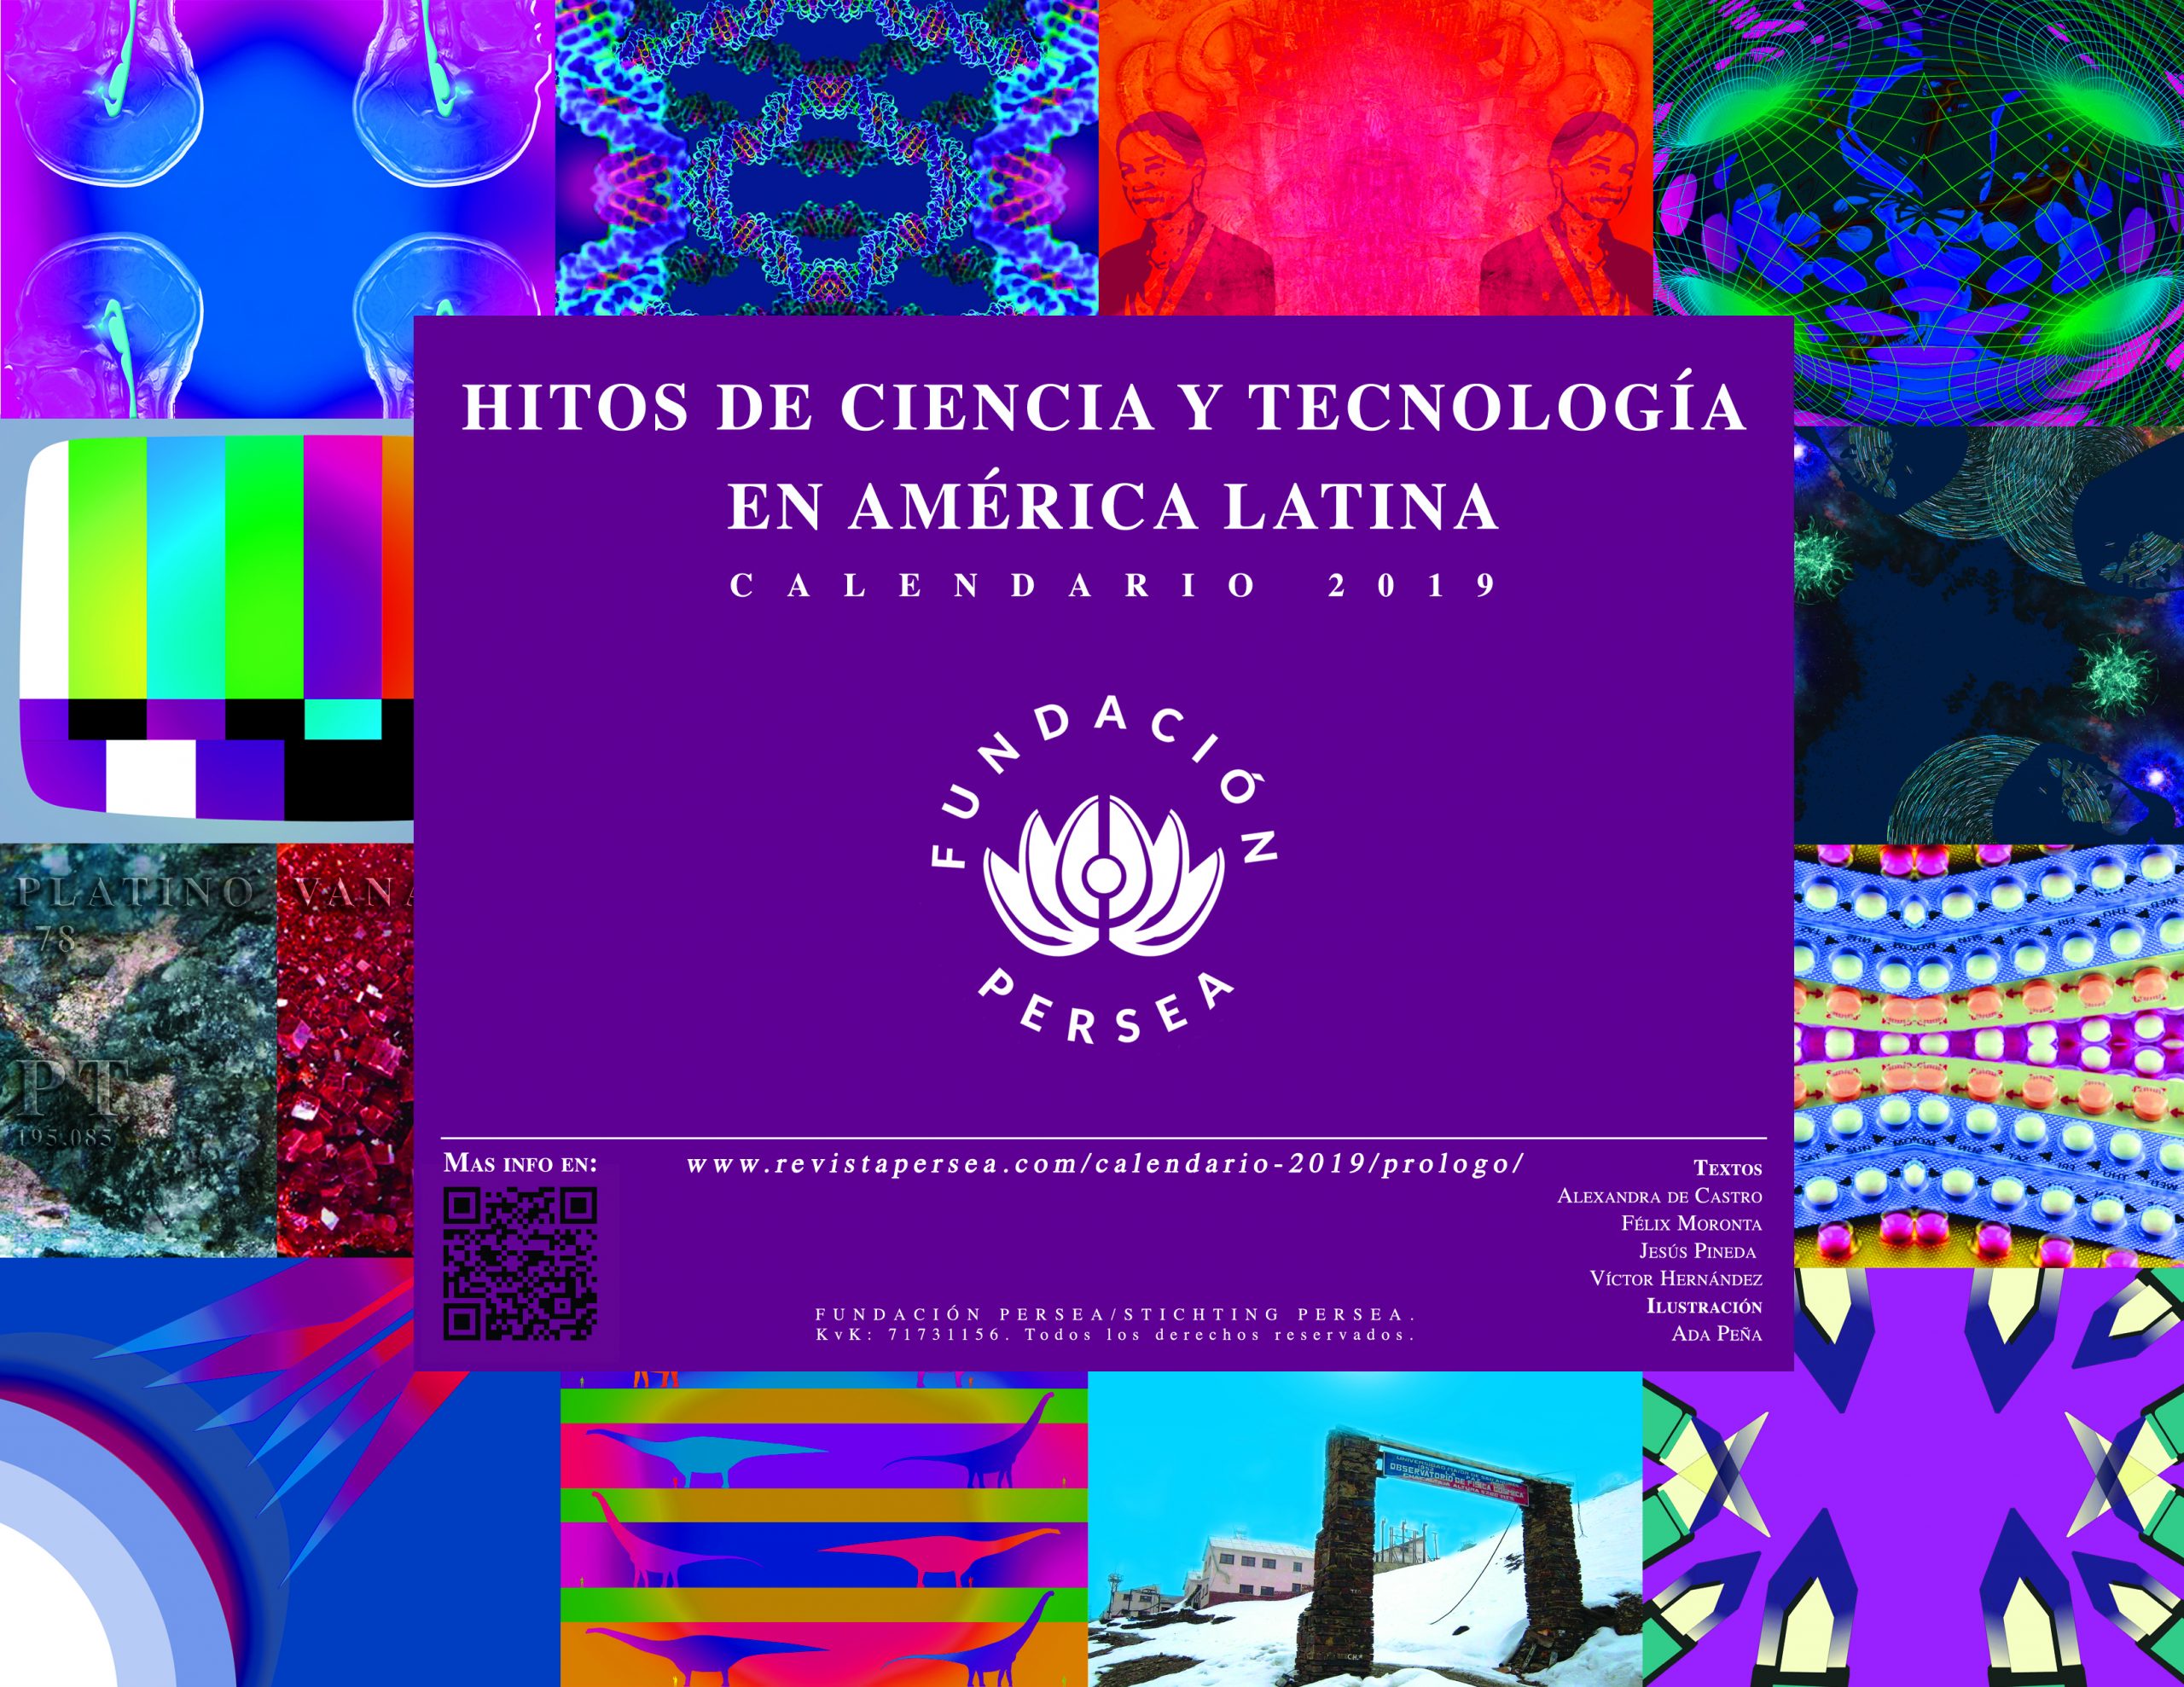 CALENDARIO 2019: HITOS DE CIENCIA Y TECNOLOGÍA EN AMÉRICA LATINA